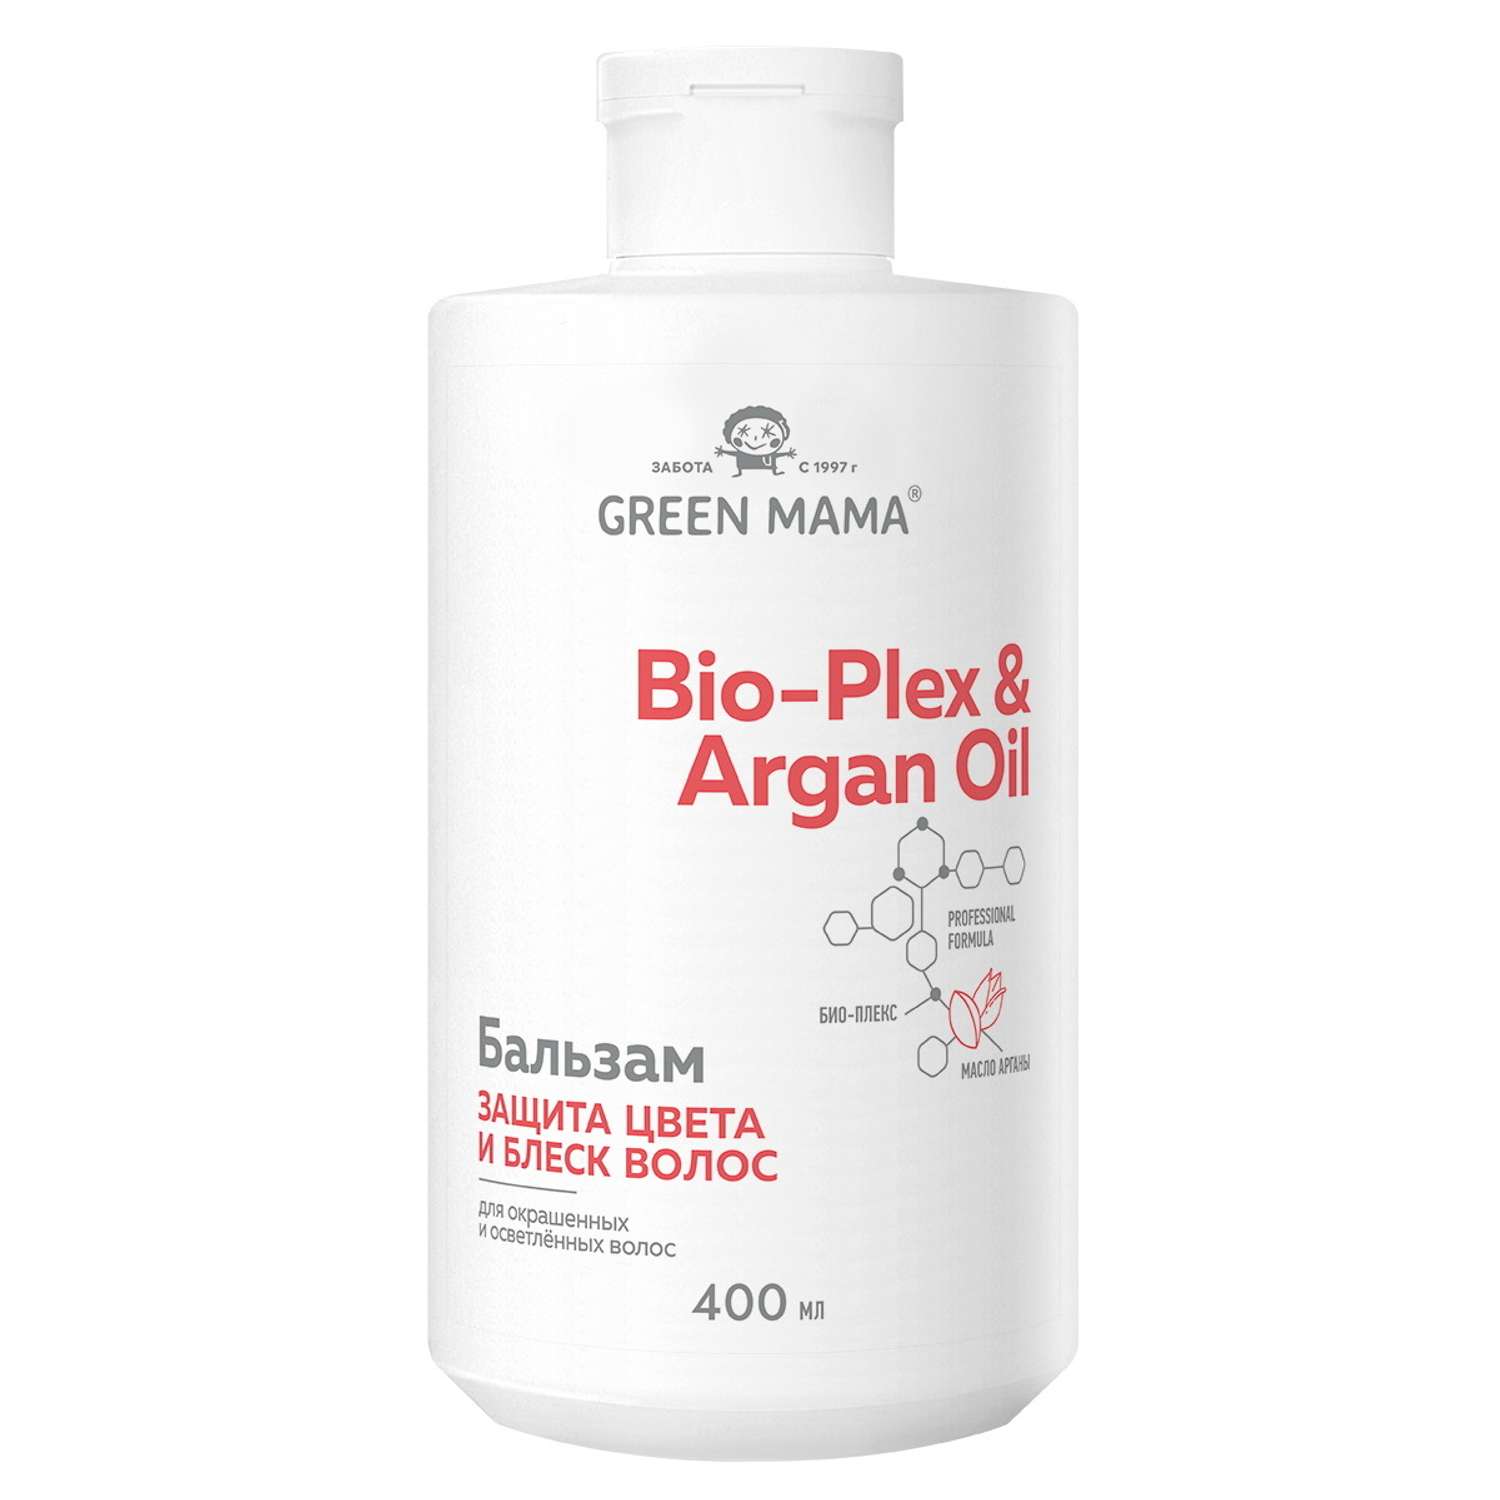 Бальзам Green Mama для защиты цвета с маслом арганы 400 мл - фото 1